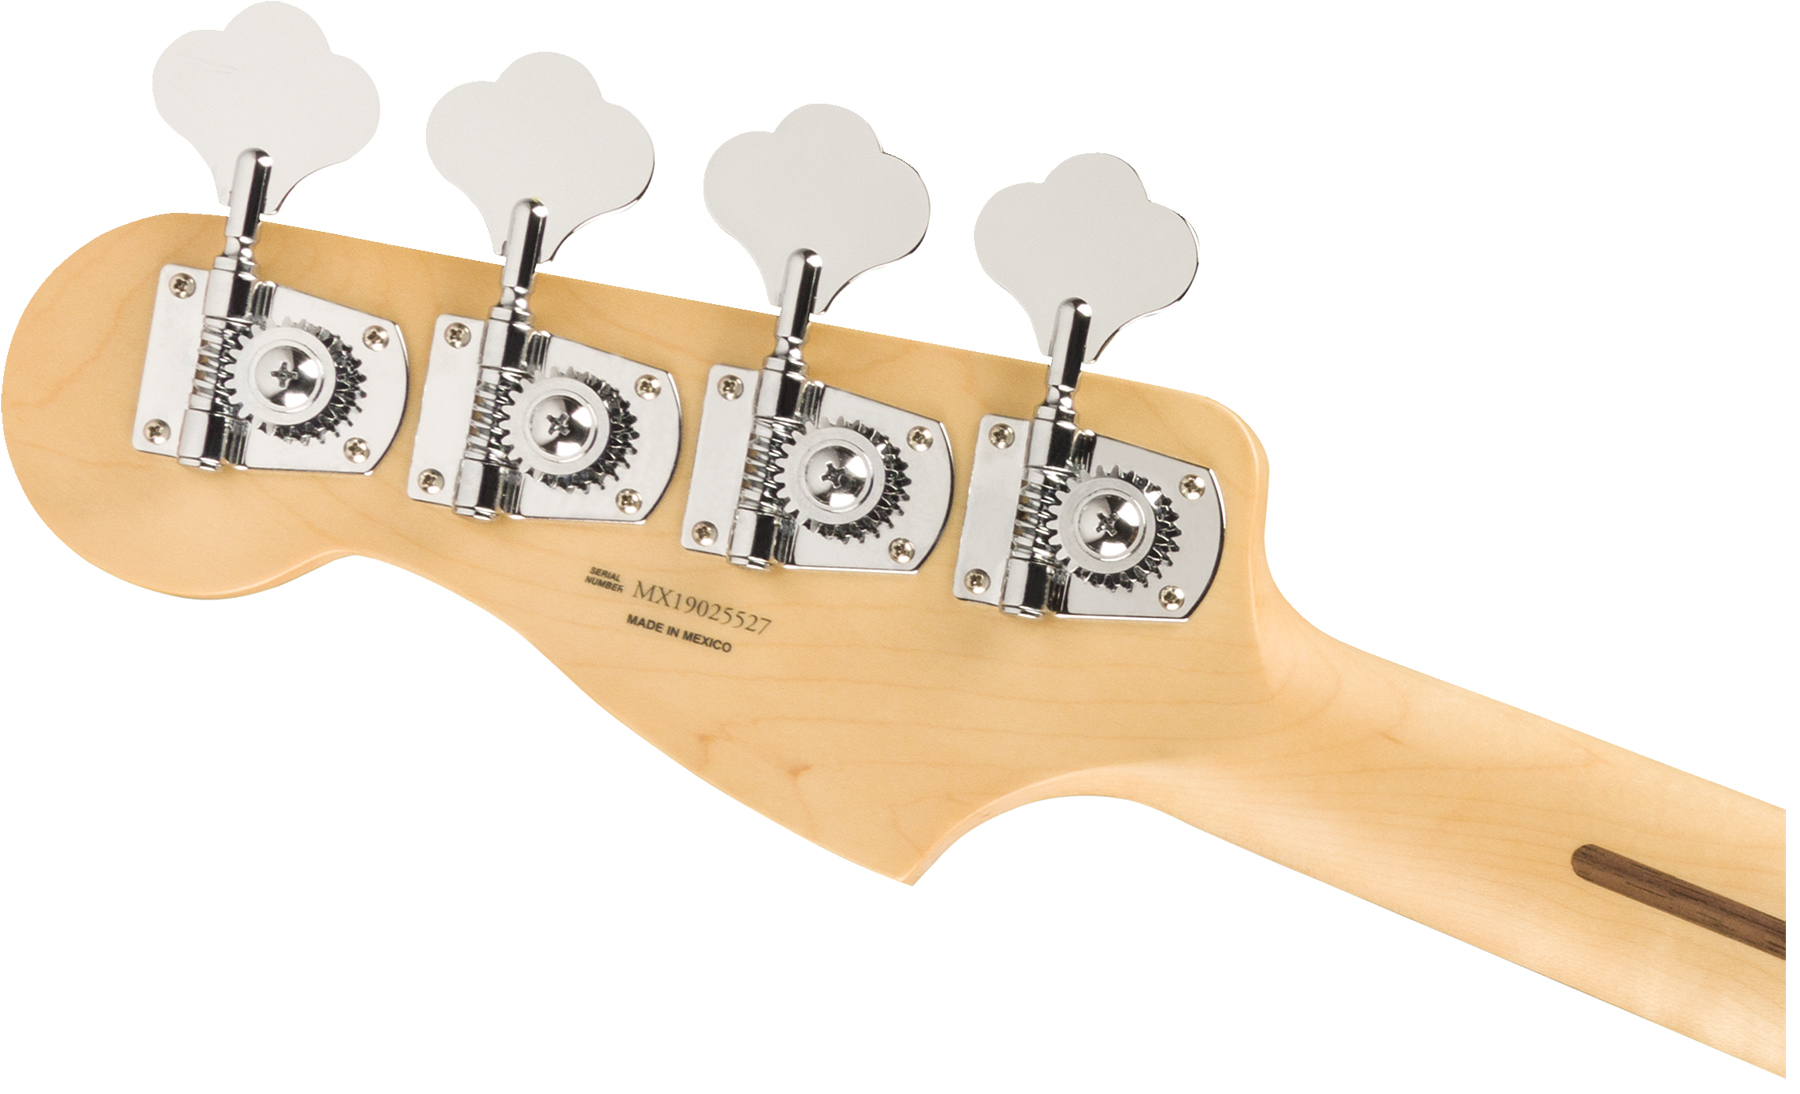 Fender Precision Bass Player Mex Pf - Capri Orange - Bajo eléctrico de cuerpo sólido - Variation 3